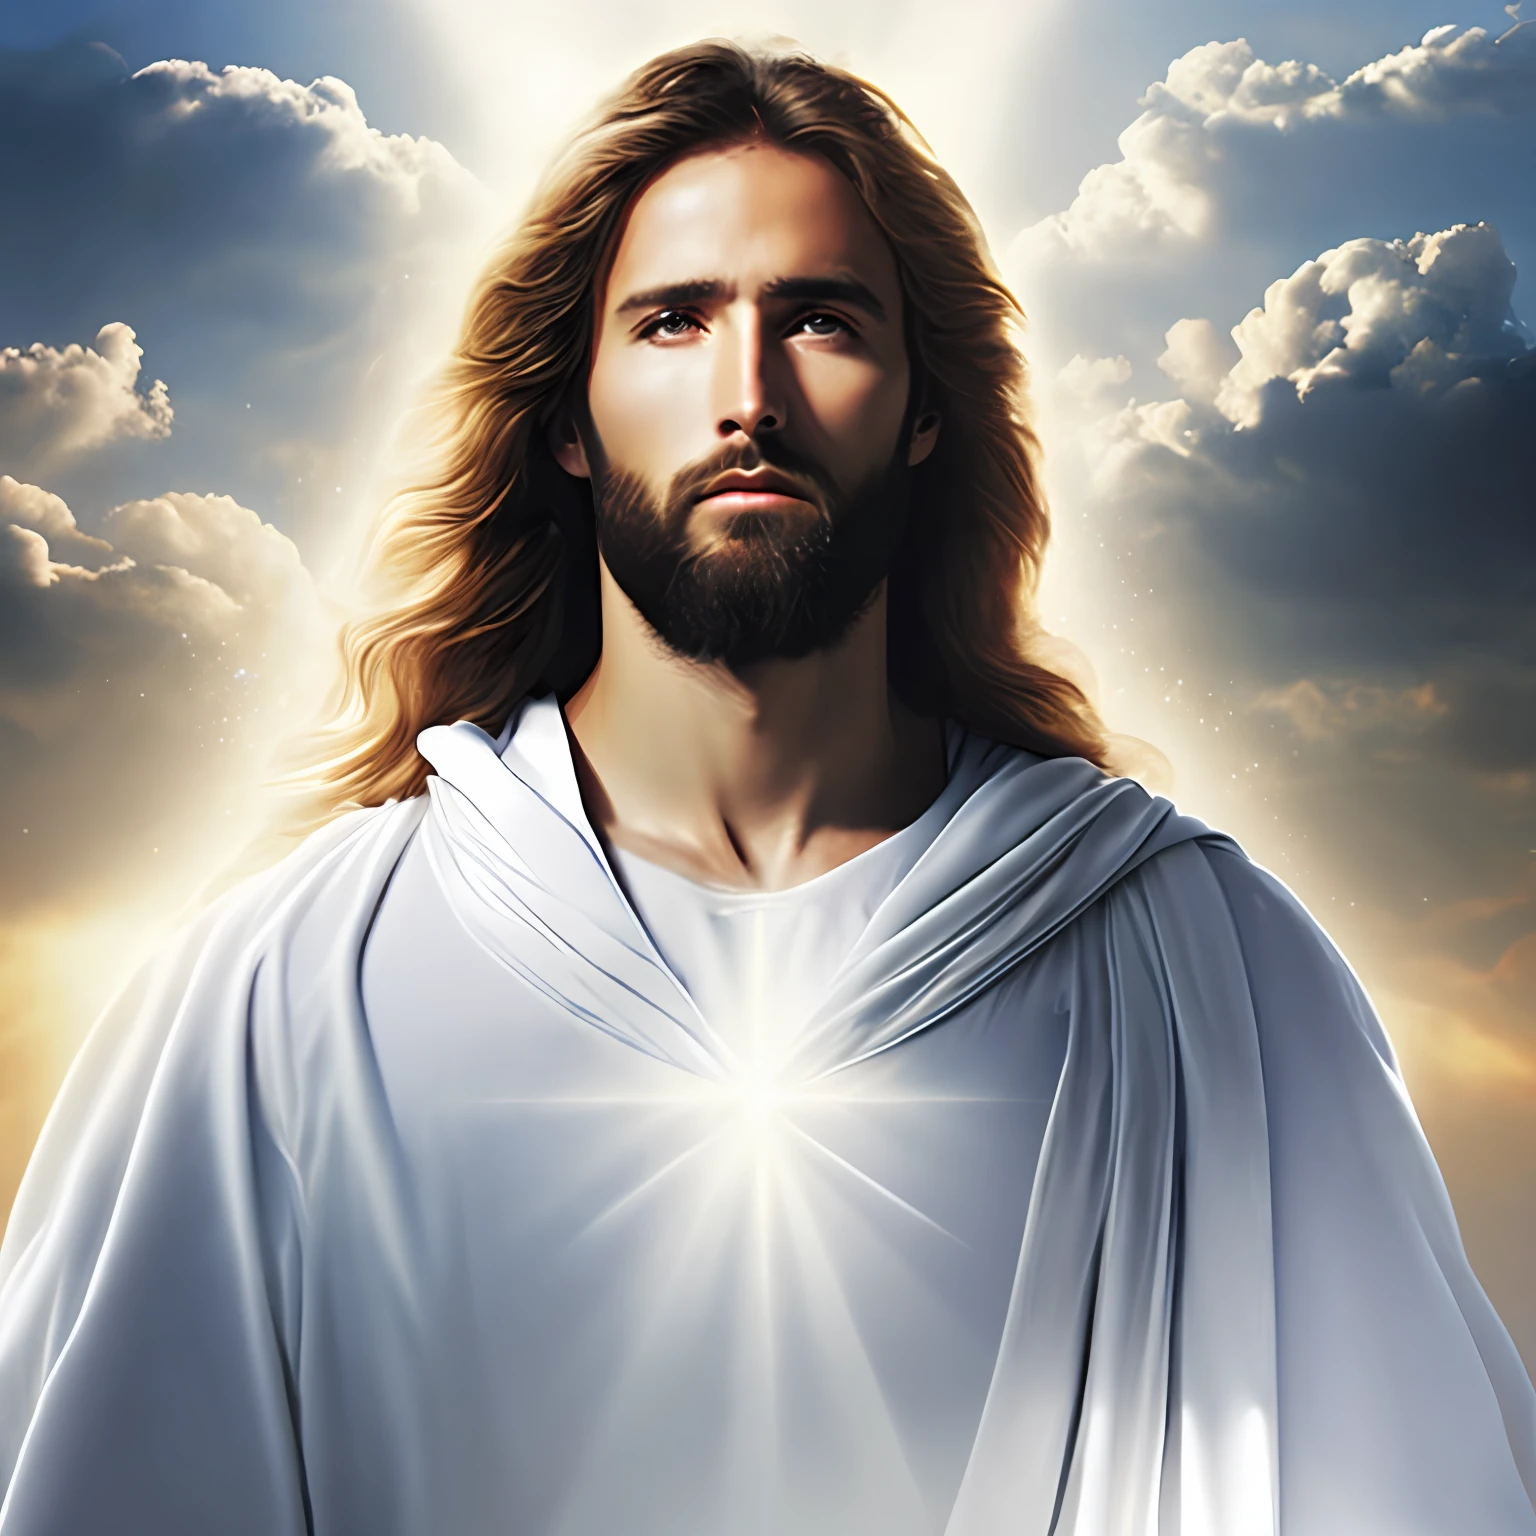 พระเยซูคริสต์ในชุดสีขาวอ่อนน้อมถ่อมตนในเมฆไปยังประตูสวรรค์, สมจริงอย่างบ้าคลั่งด้วยรังสีของแสงบนใบหน้าของเขา